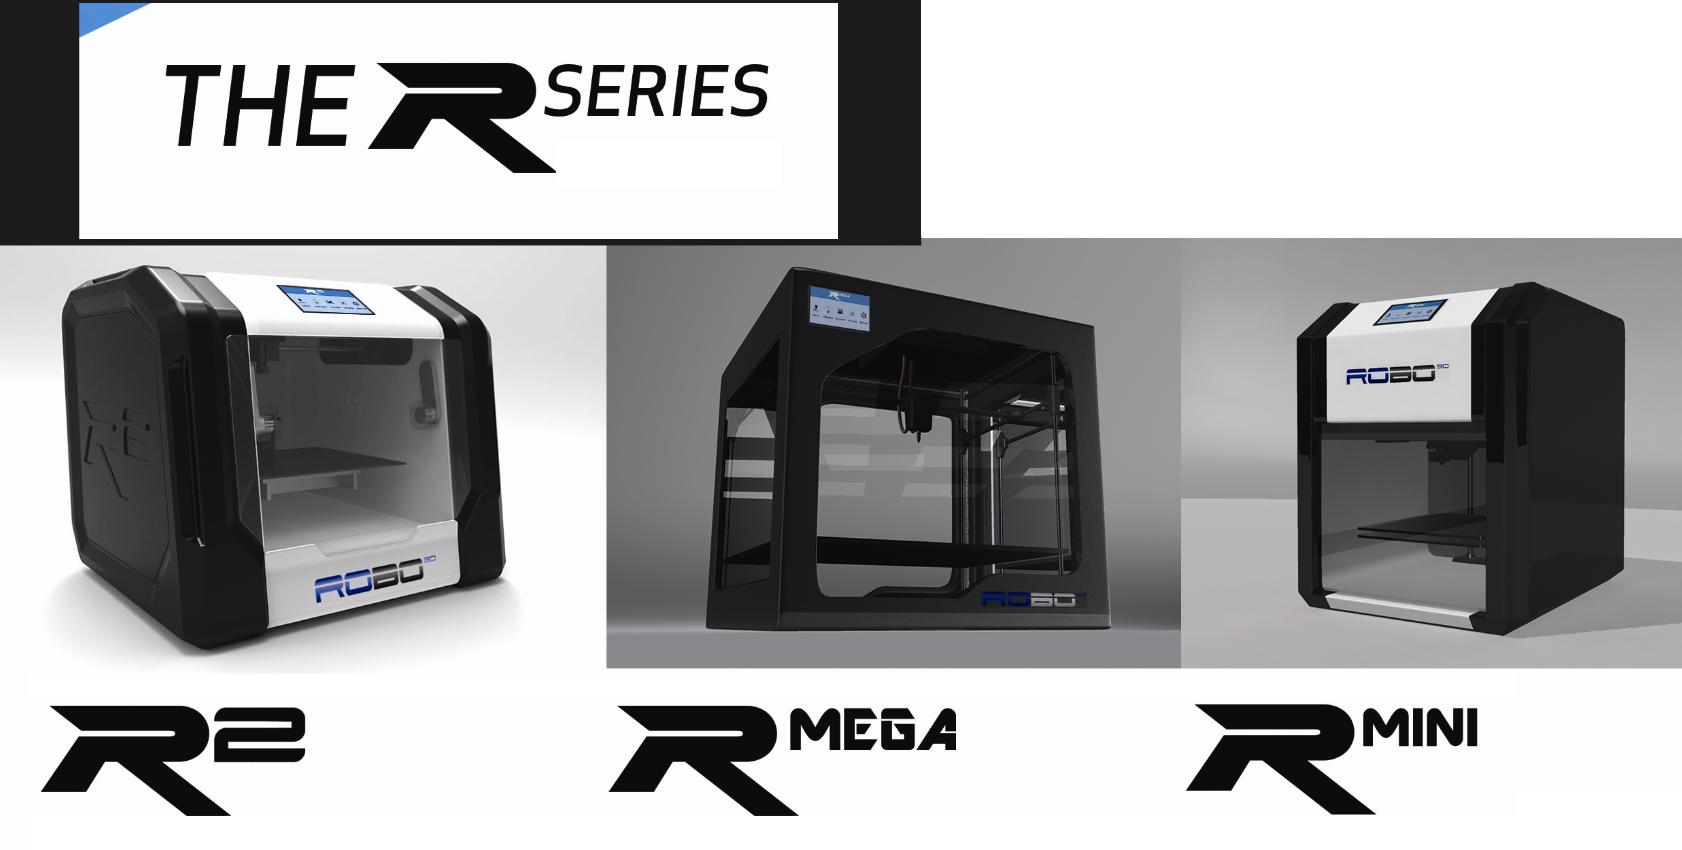 Maggiori informazioni su "#CES2015: Robo lancia tre nuove stampanti 3D e un sistema multicolore FDM"